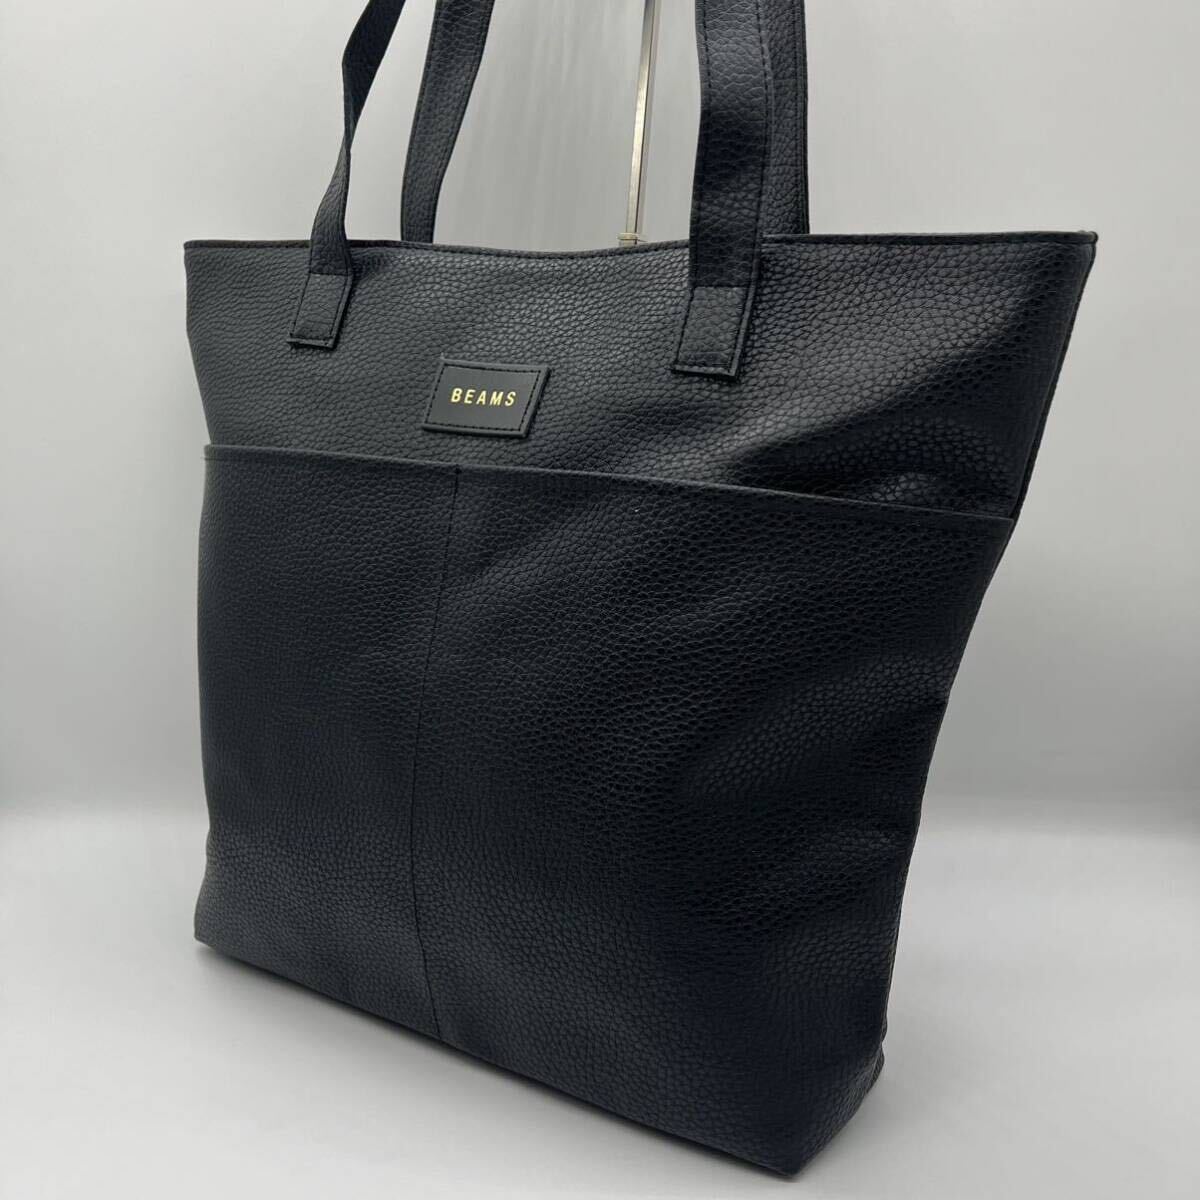 BEAMS Beams все кожа большая сумка вертикальный A4 размер место хранения плечо .. черный боковой карман морщина кожа 